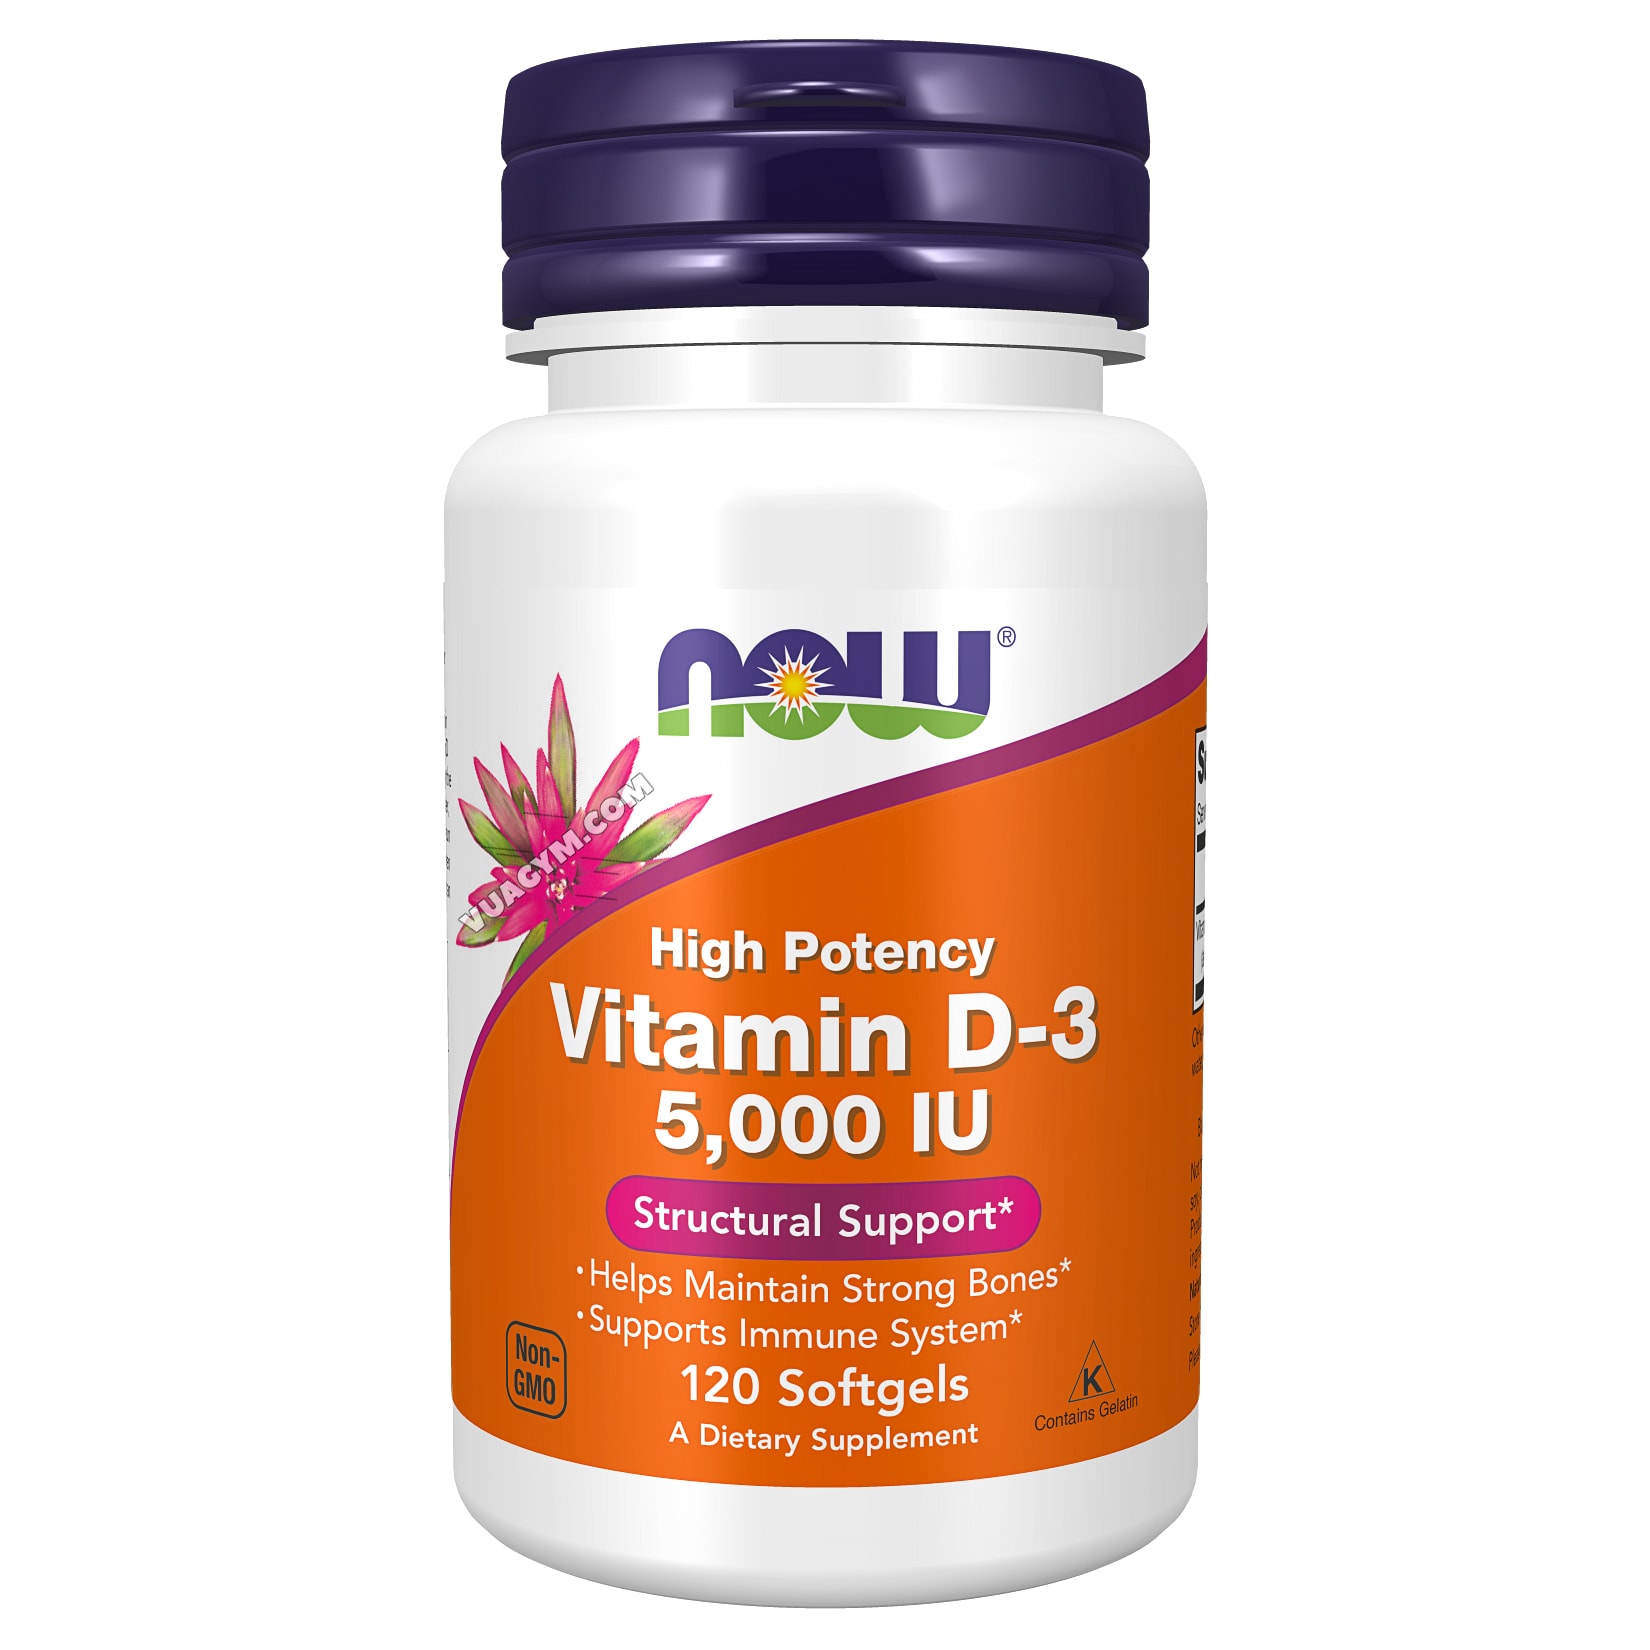 Giá thành và hình thức đóng gói của D vitamin 5000 IU?
